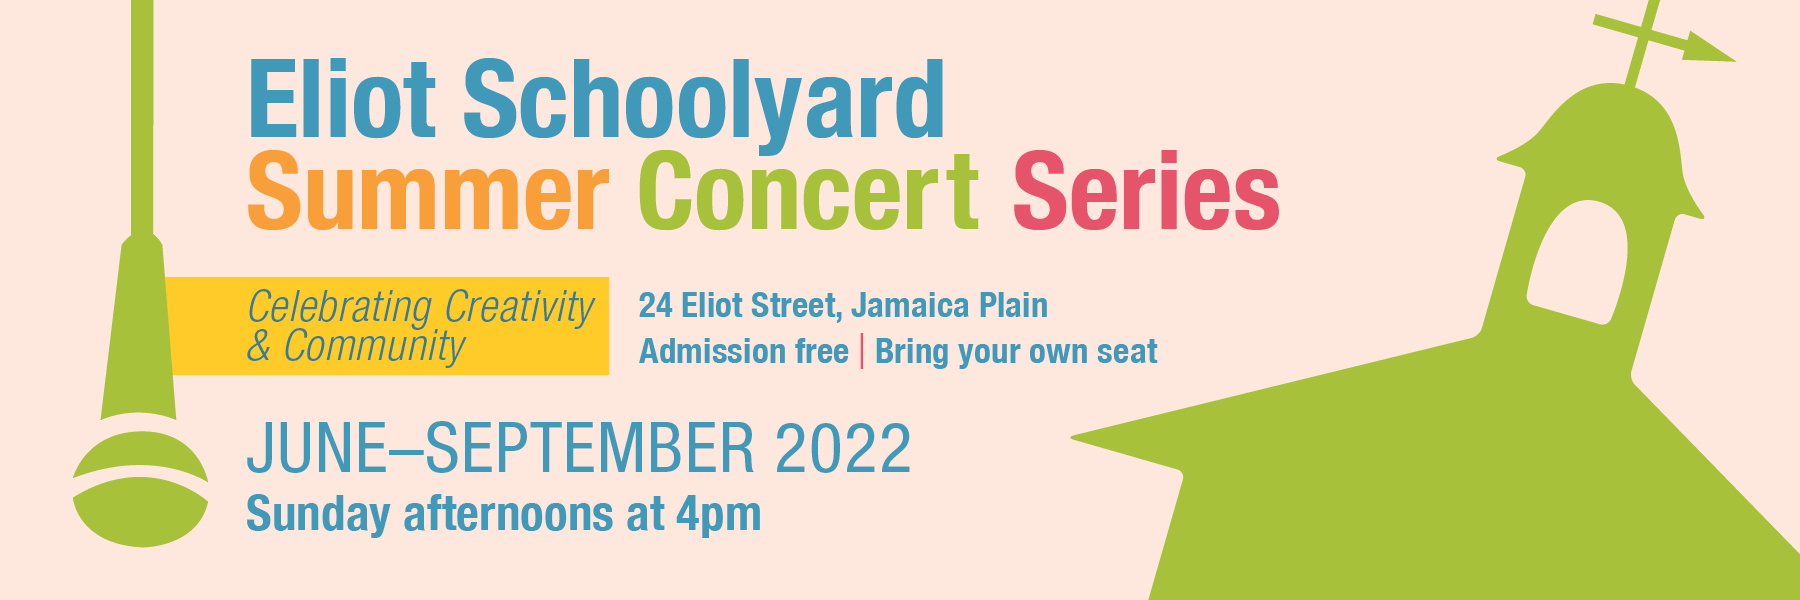 Eliot Schoolyard Concerts 2022